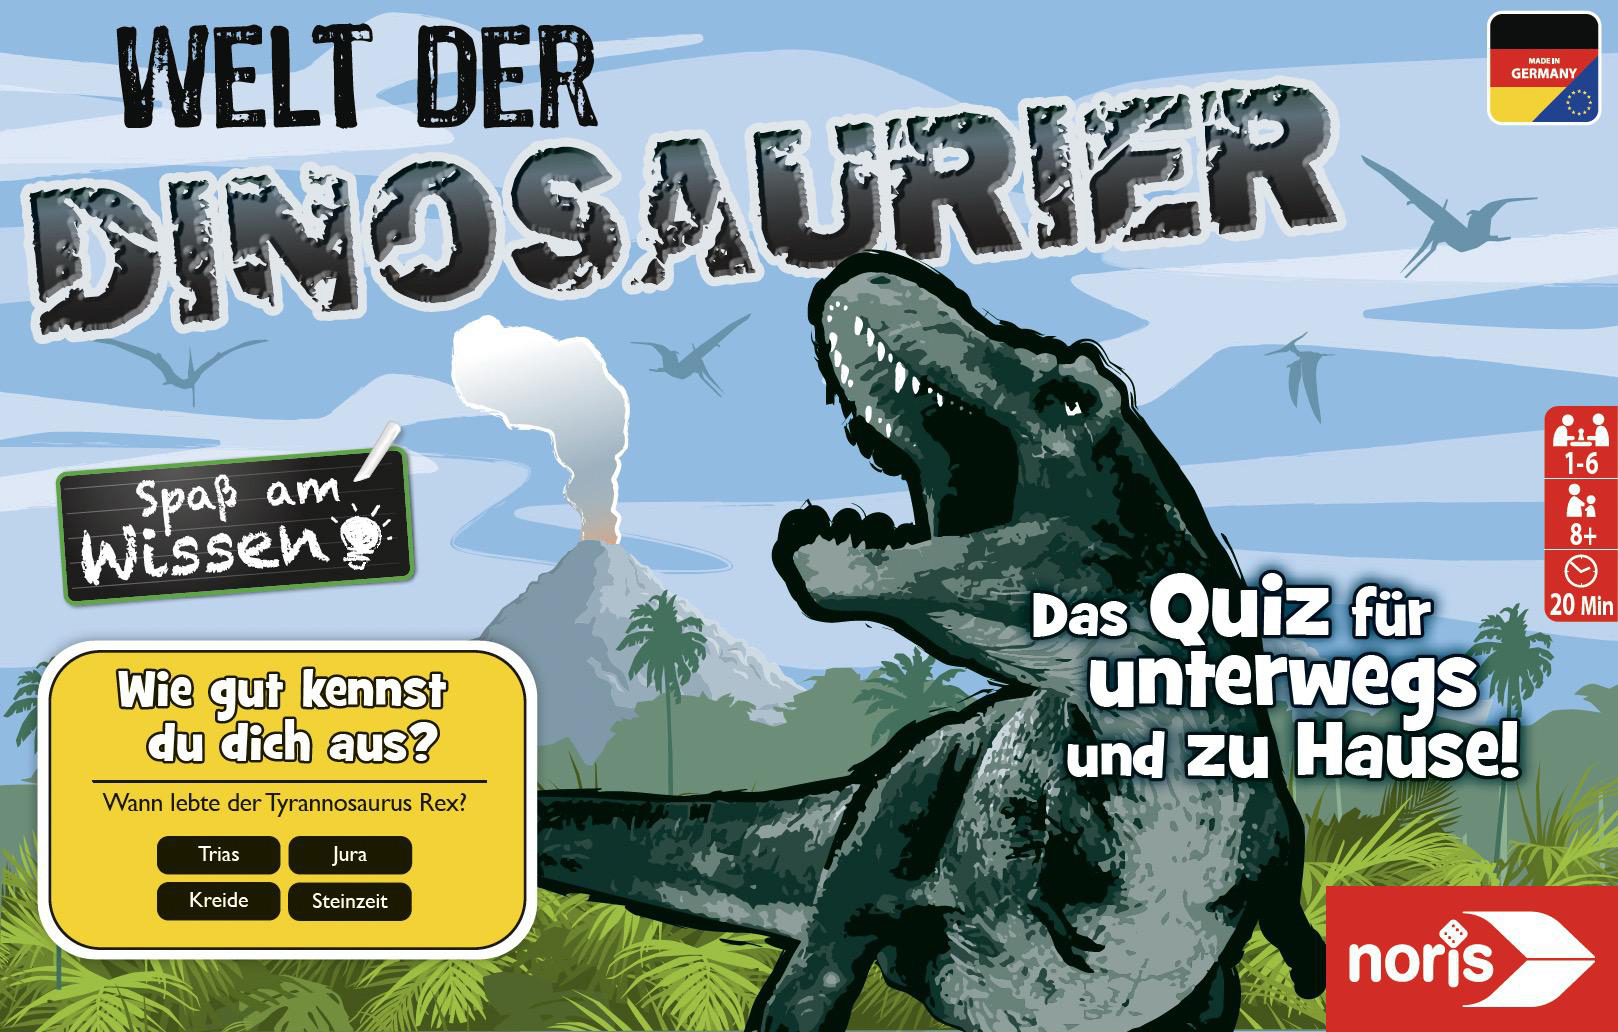 der Dinosaurier Welt Mehrfarbig Quizspiel, NORIS